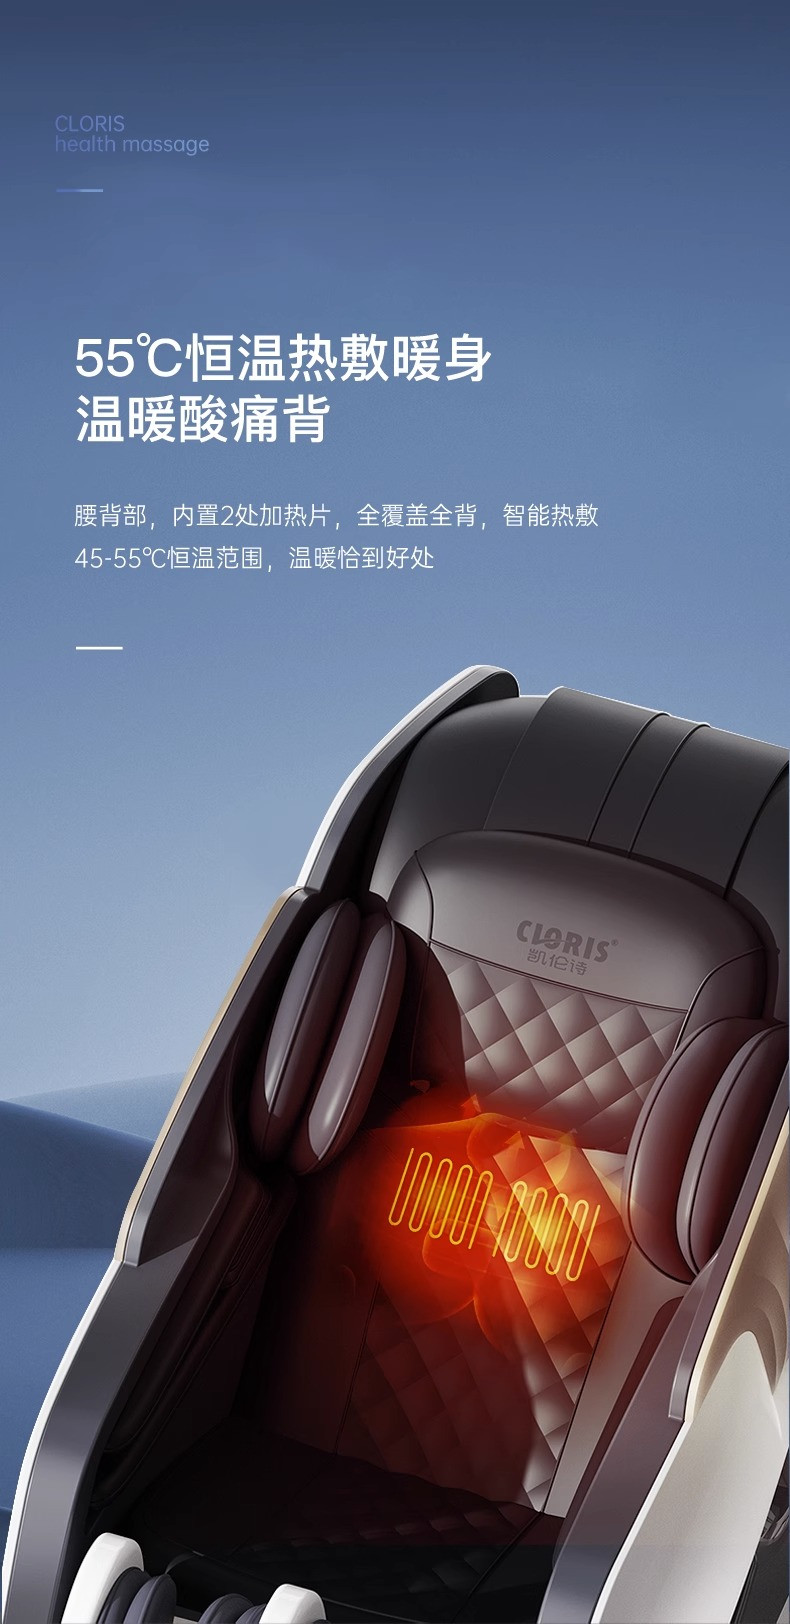 凯伦诗/CLORIS 智能按摩椅CLORIS-S916